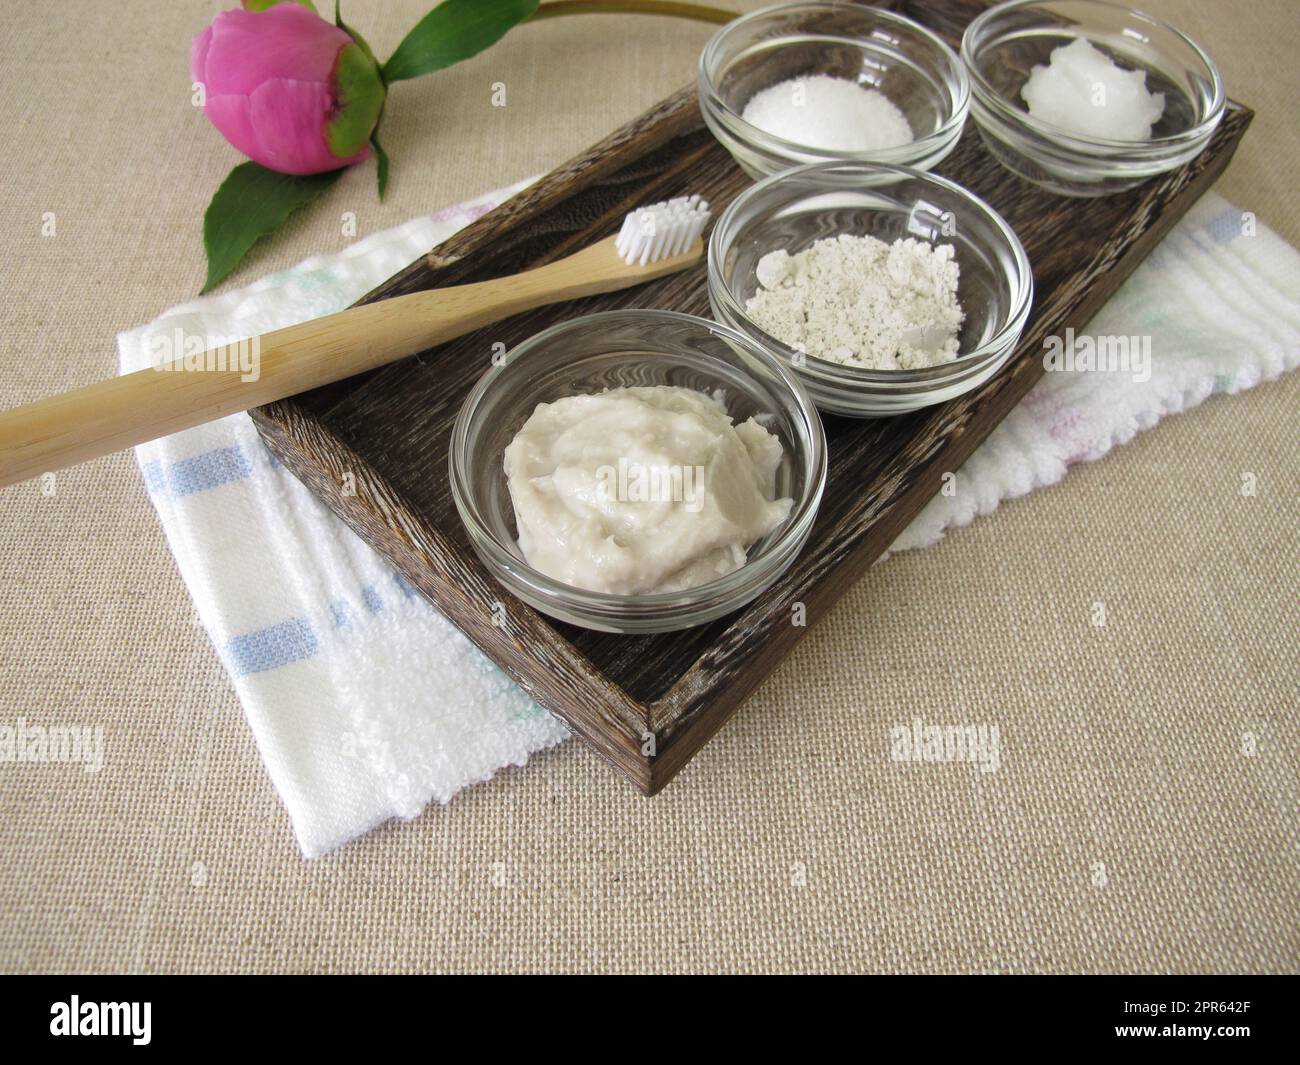 Dentifricio fatto in casa da tre ingredienti con olio di cocco, xilitolo e gesso in polvere Foto Stock